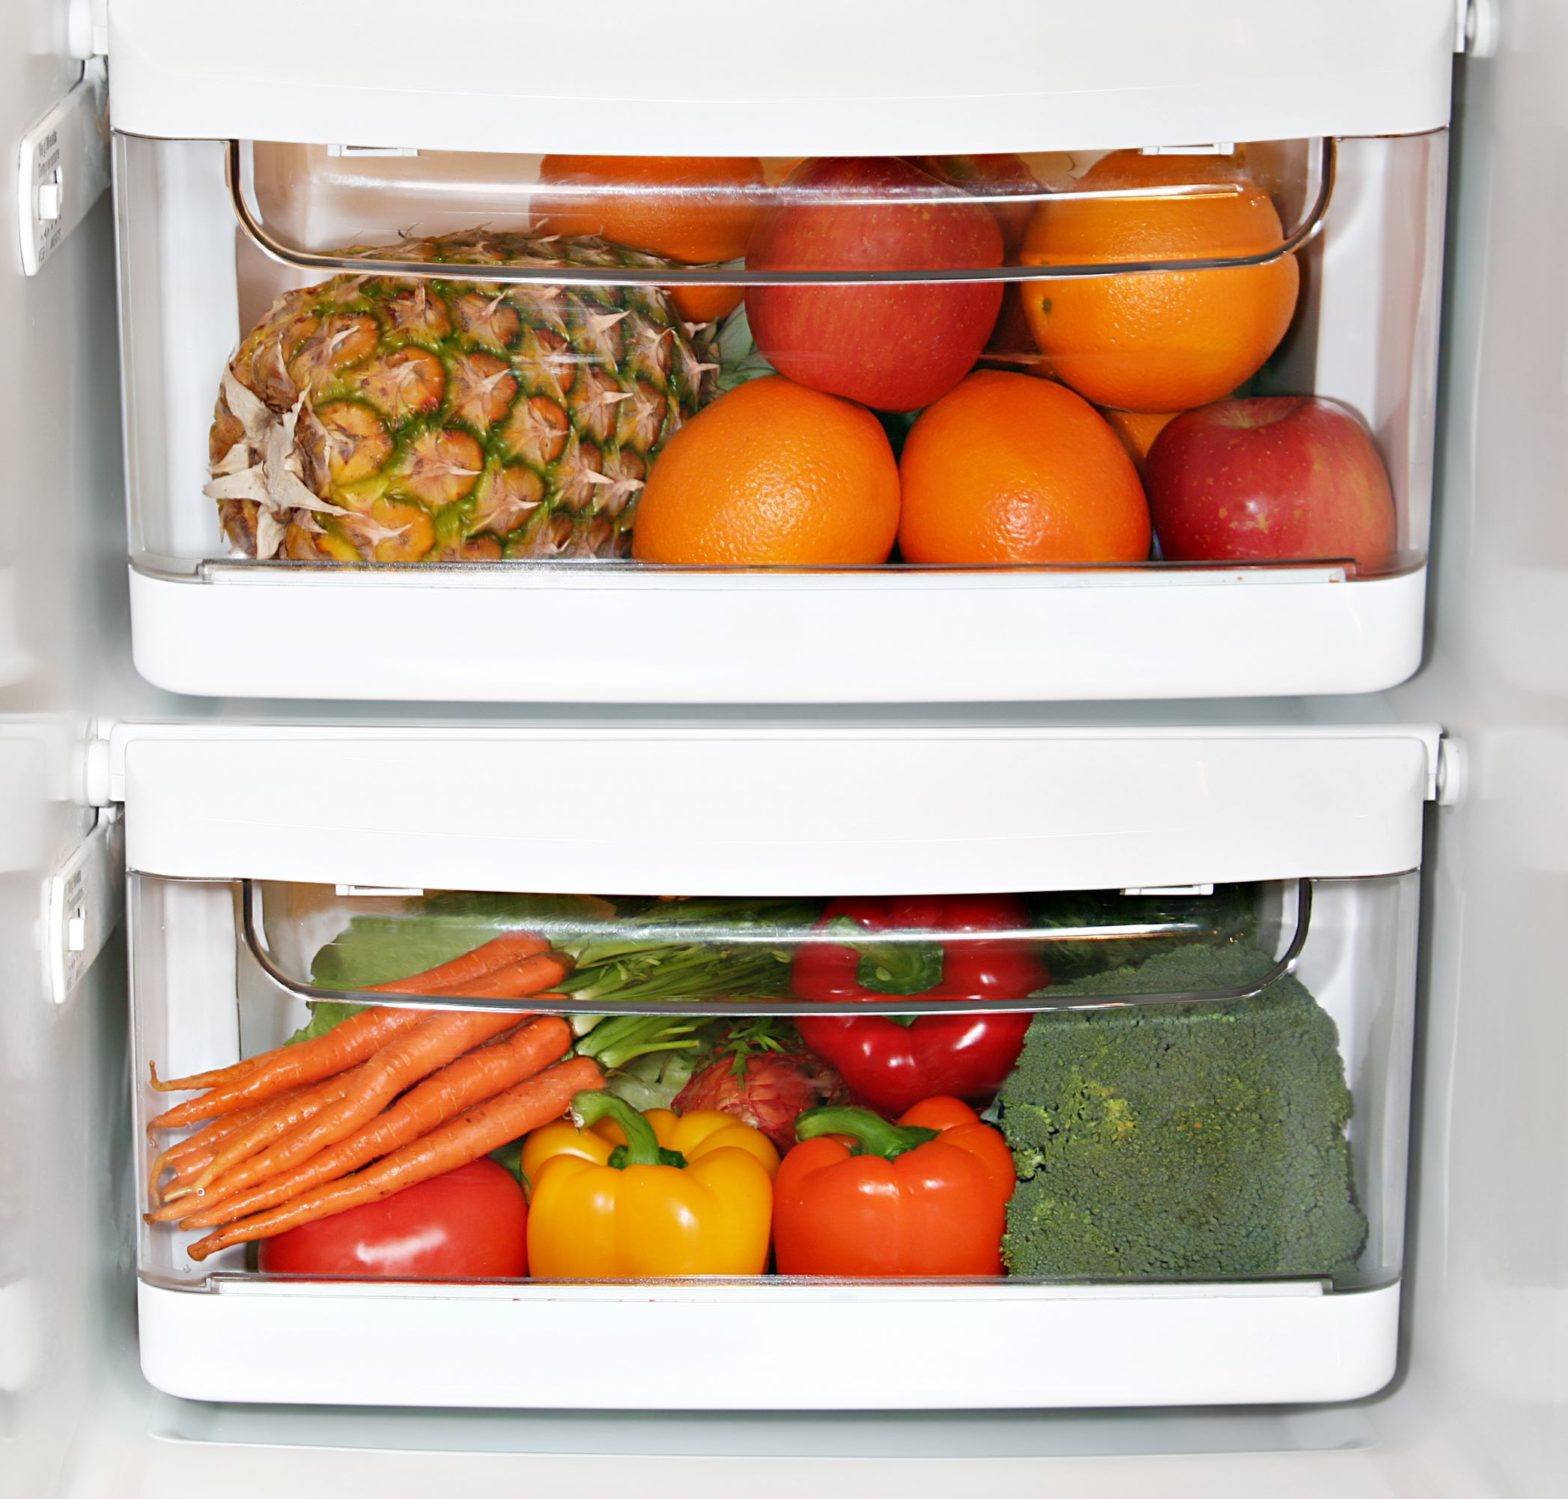 Warum ist das Gemüsefach im Kühlschrank nass